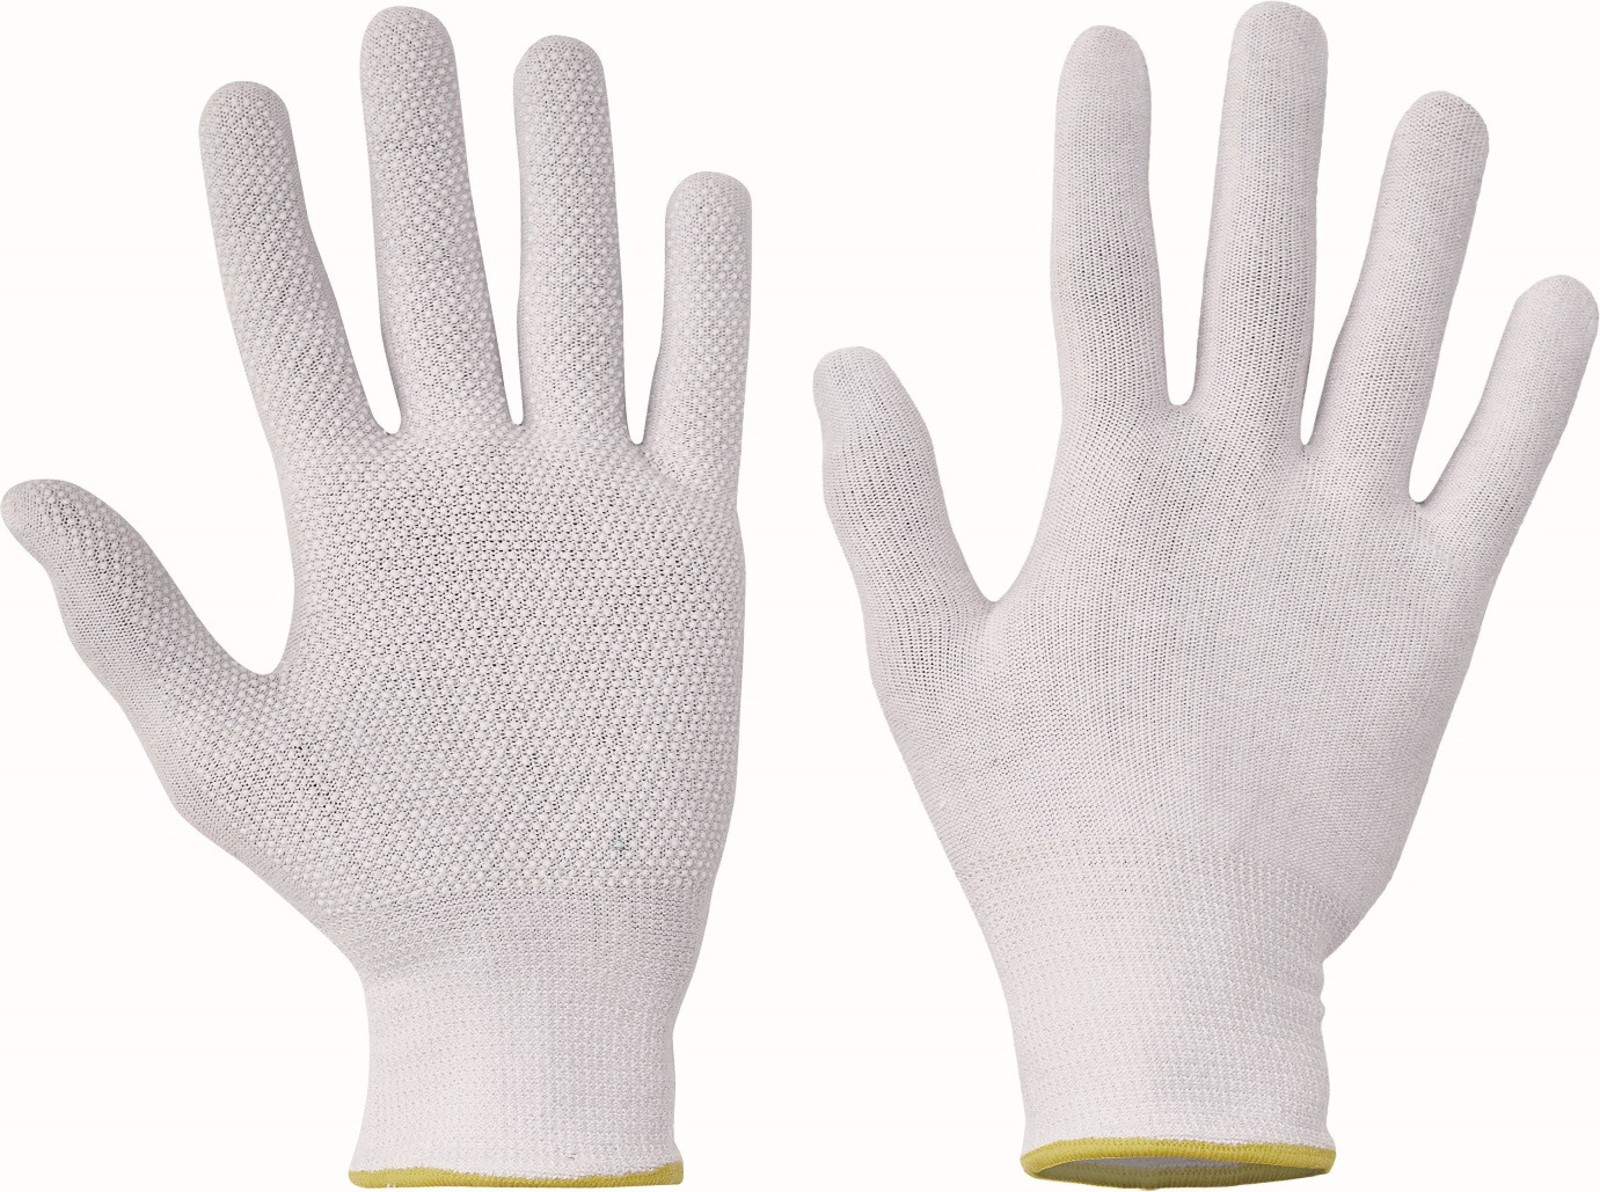 Pracovné rukavice Bustard Evo s terčíkmi - veľkosť: 11/XXL